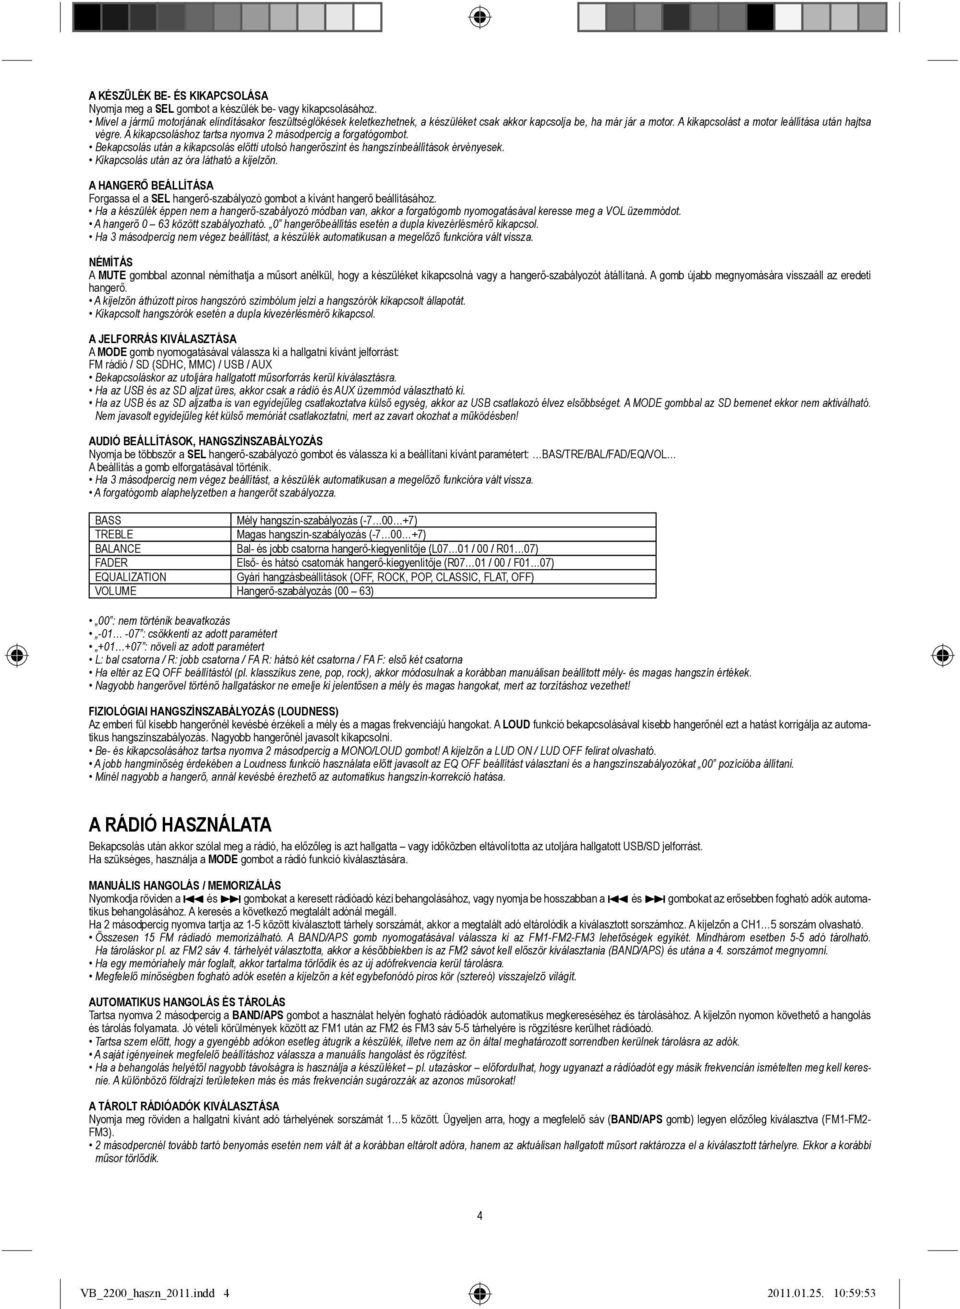 MMC VOXBOX VB használati utasítás - PDF Ingyenes letöltés